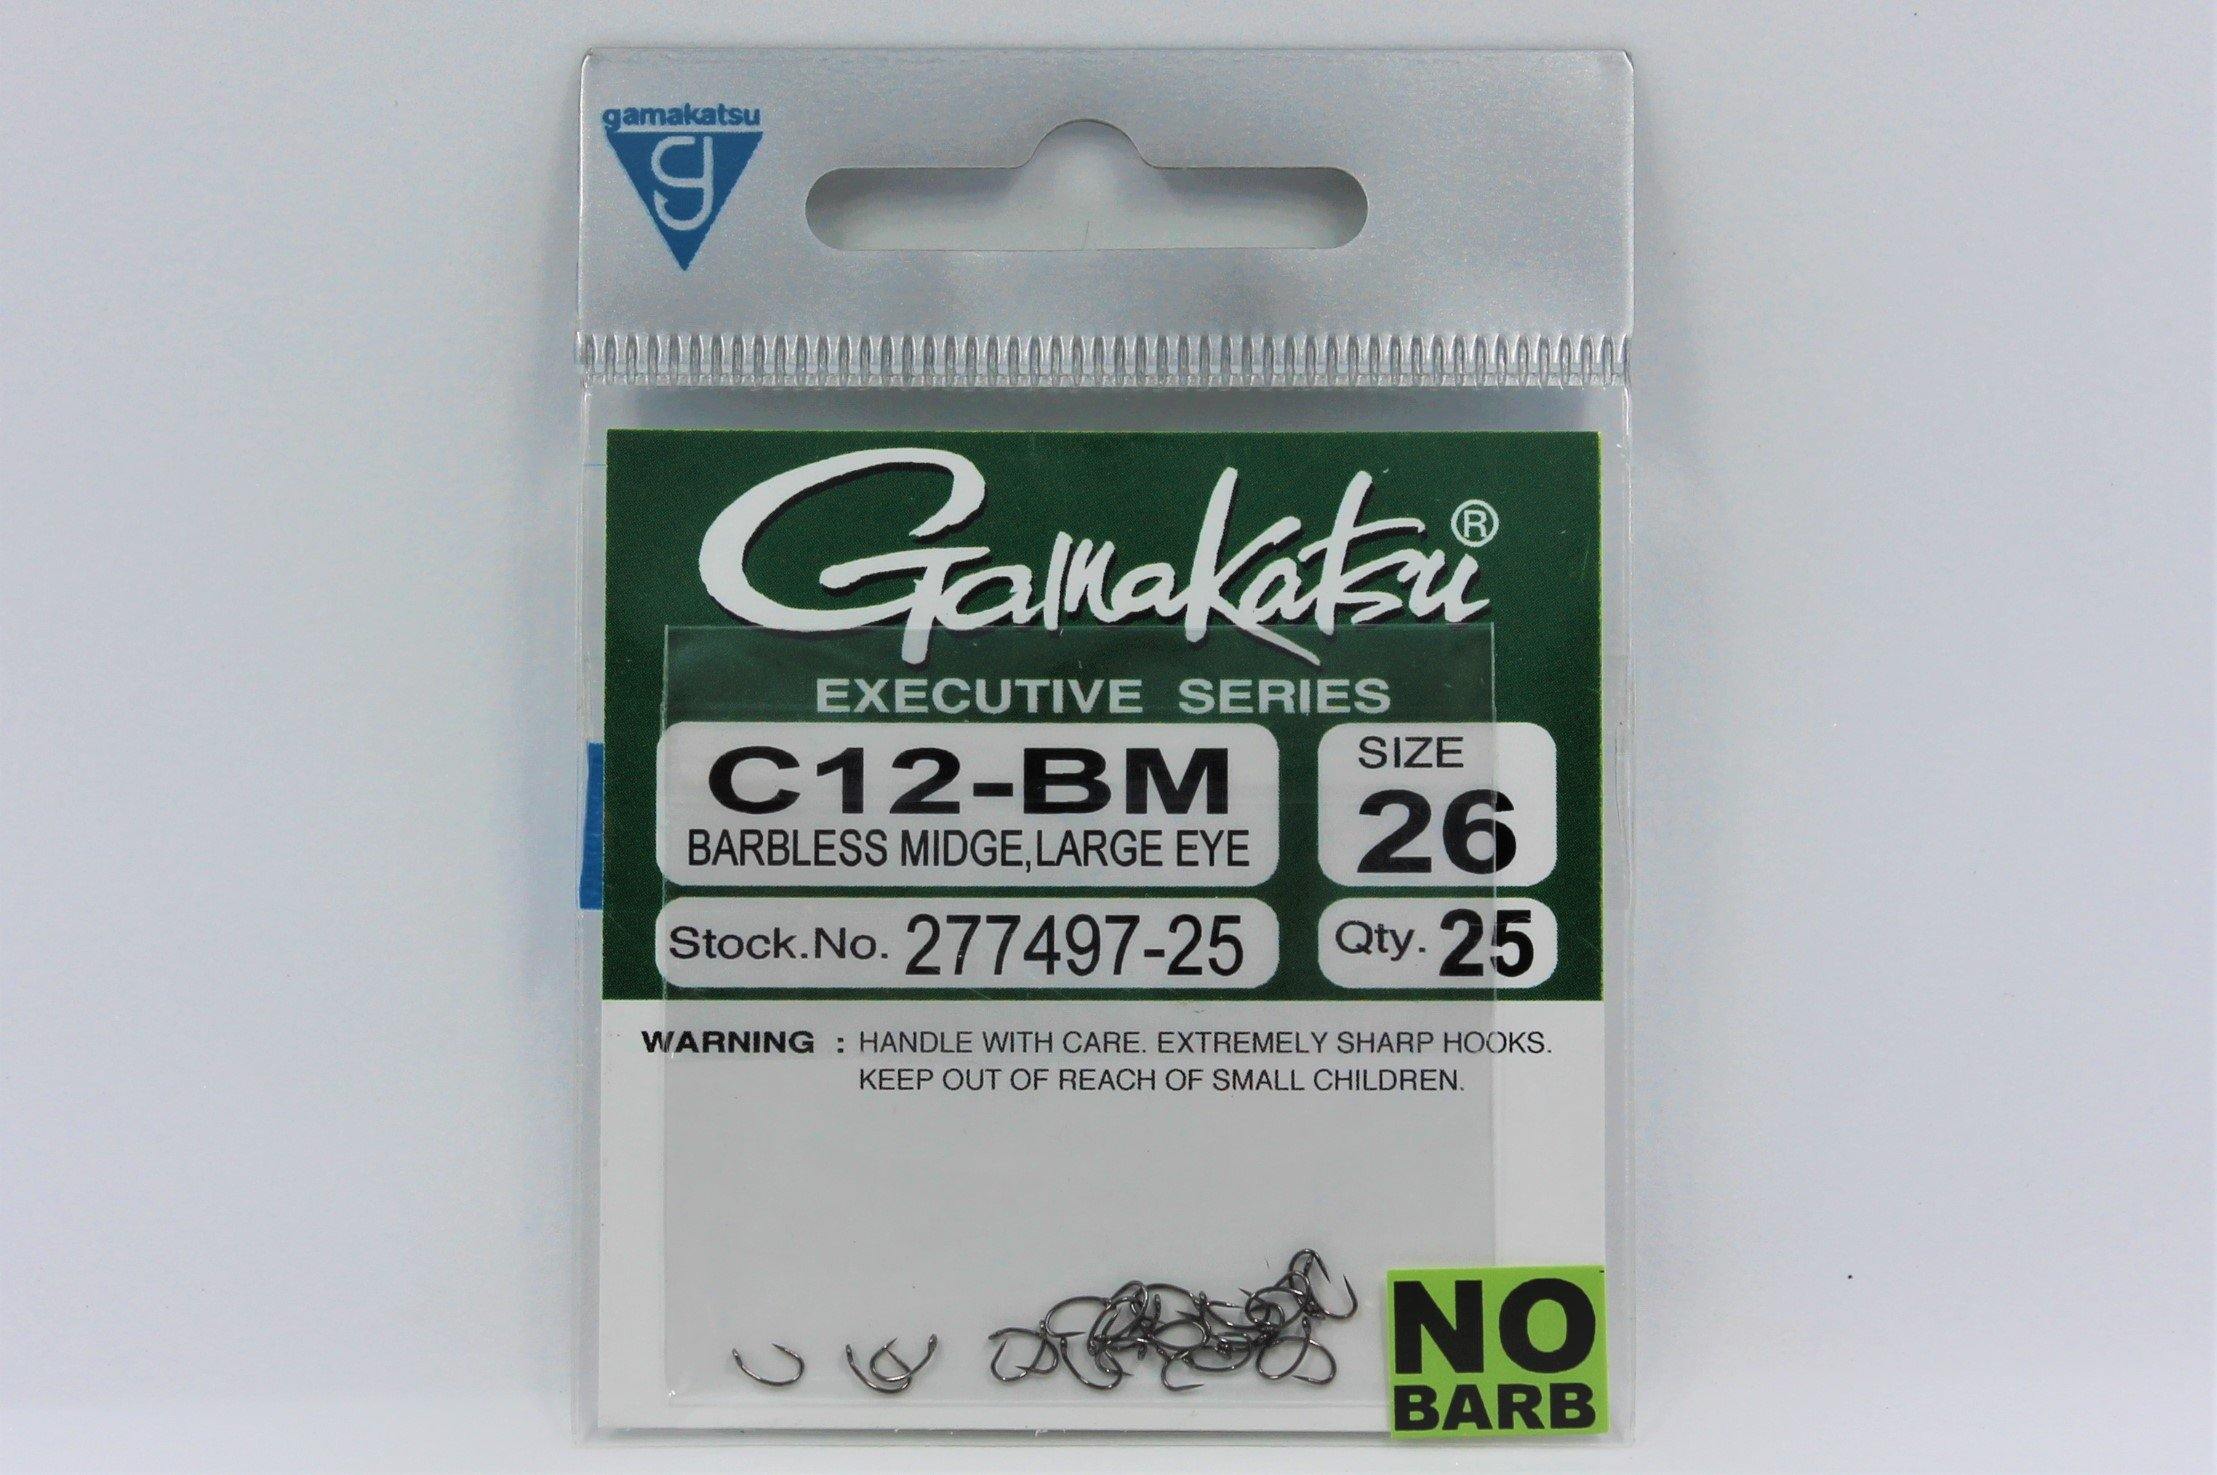 Gamakatsu C12-BM Large Eye Barbless Midge Hook 30